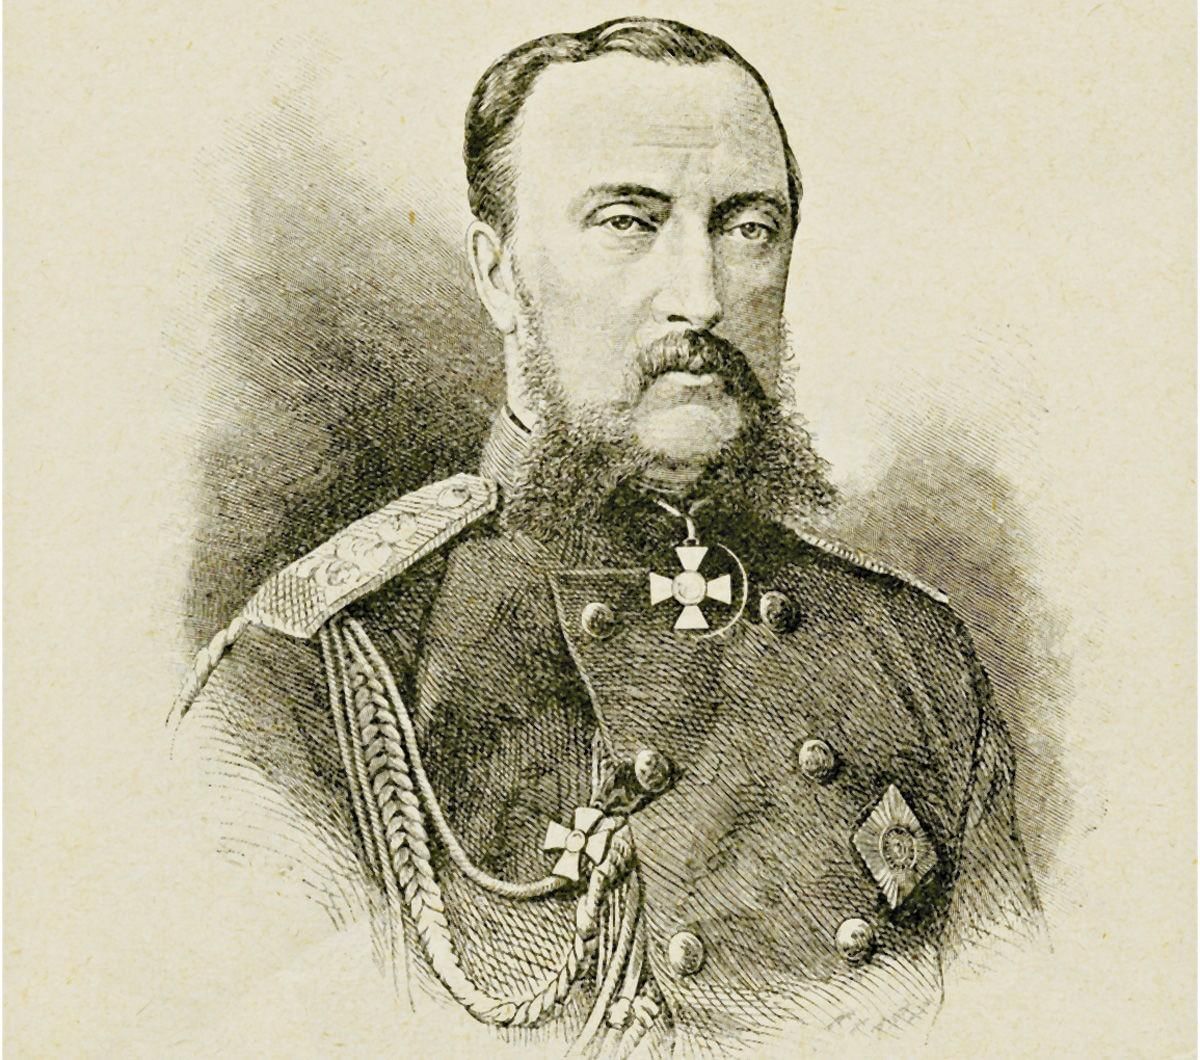 Великий князь Николай Николаевич старший